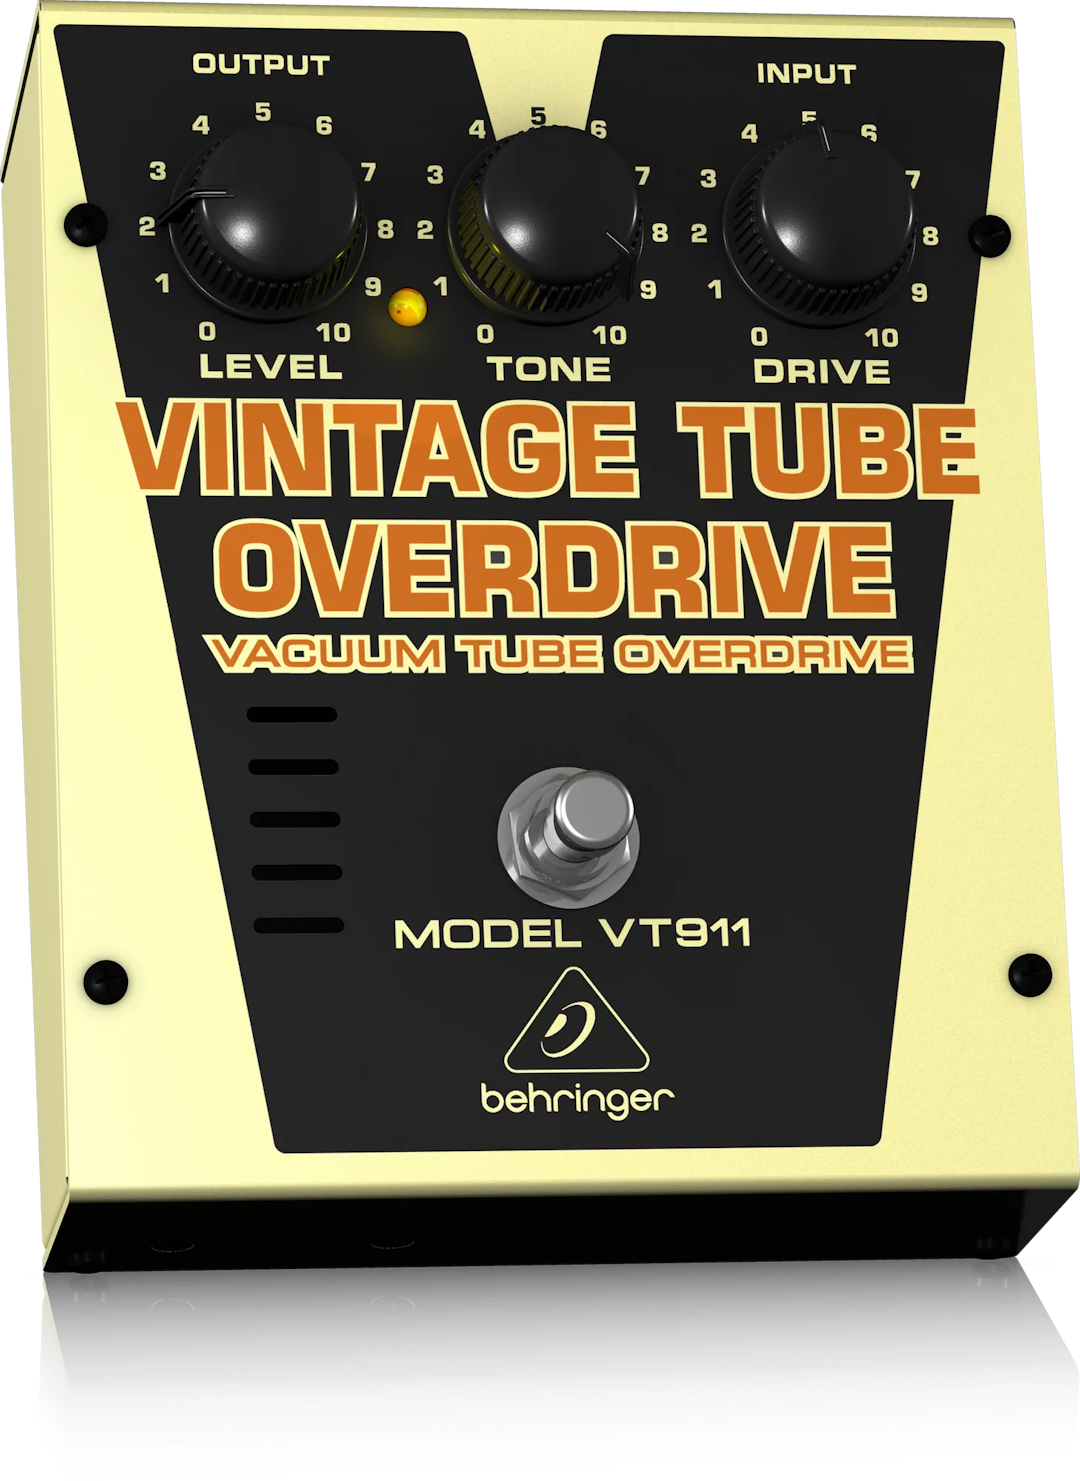 VT911 Vintage Tube Overdrive Guitar Pedal By Behringer